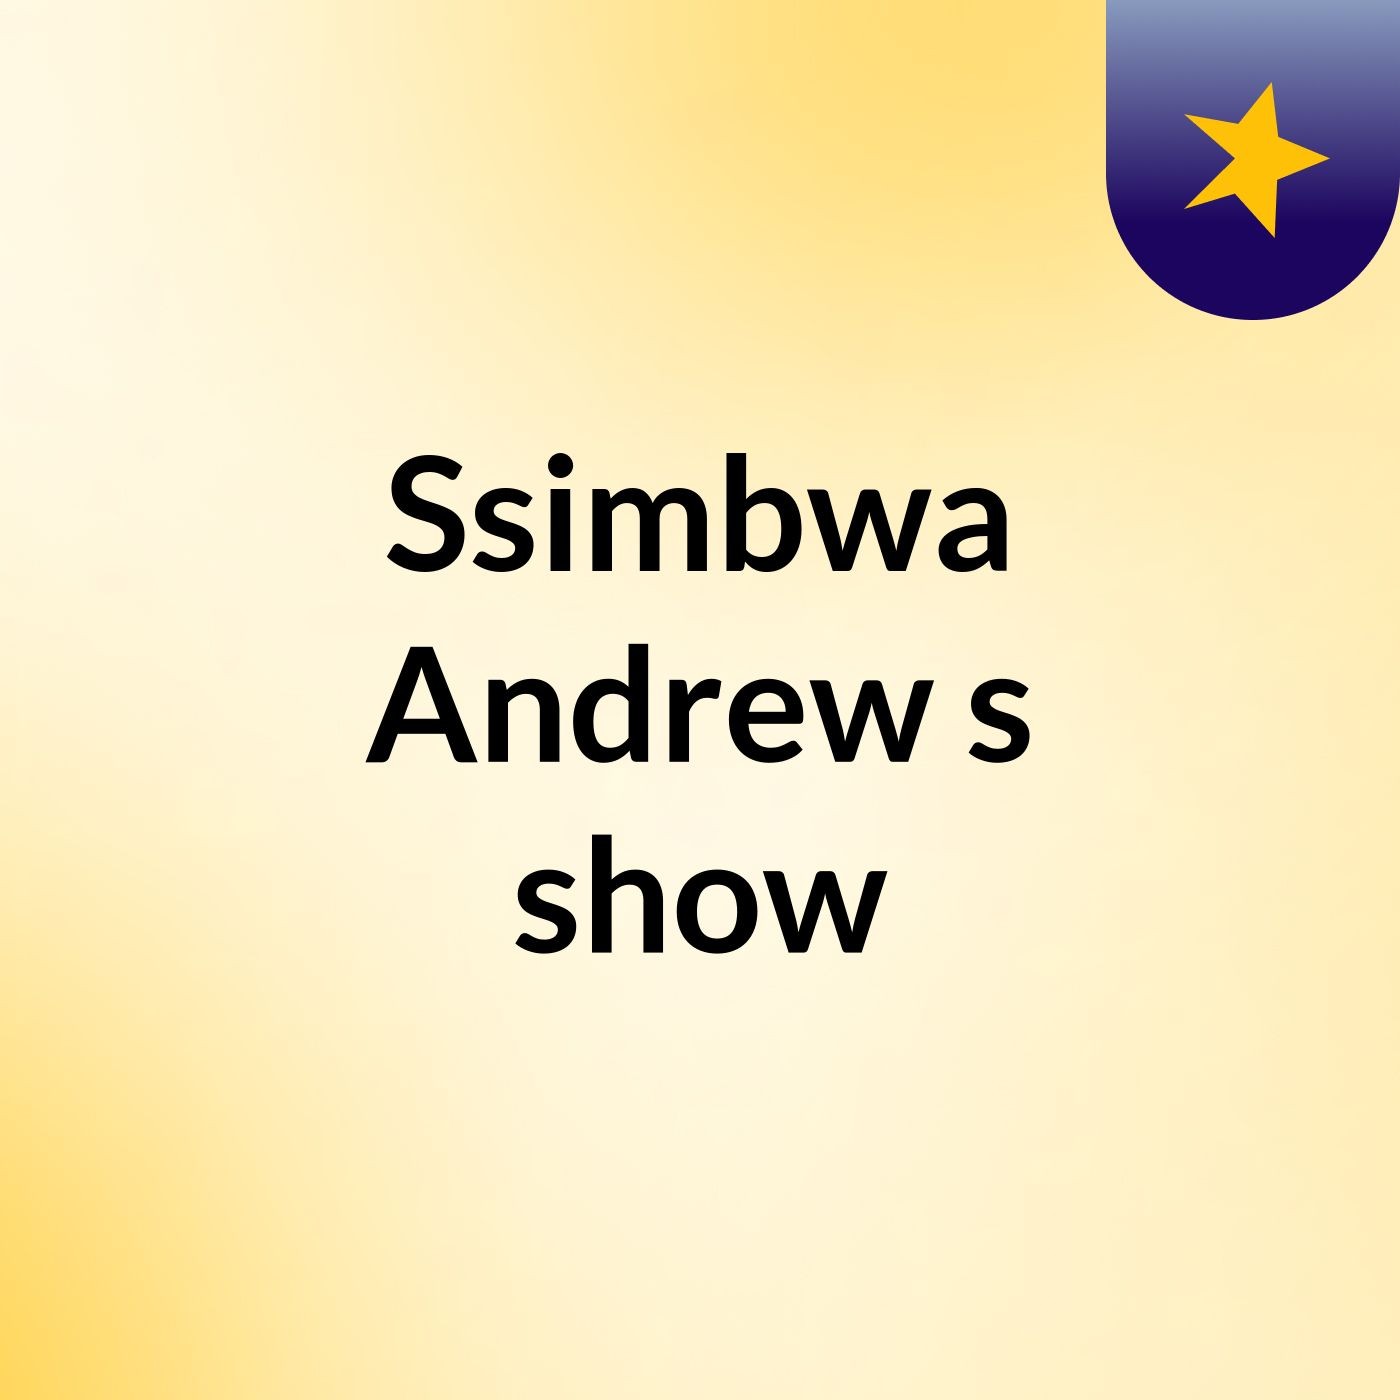 Ssimbwa Andrew's show